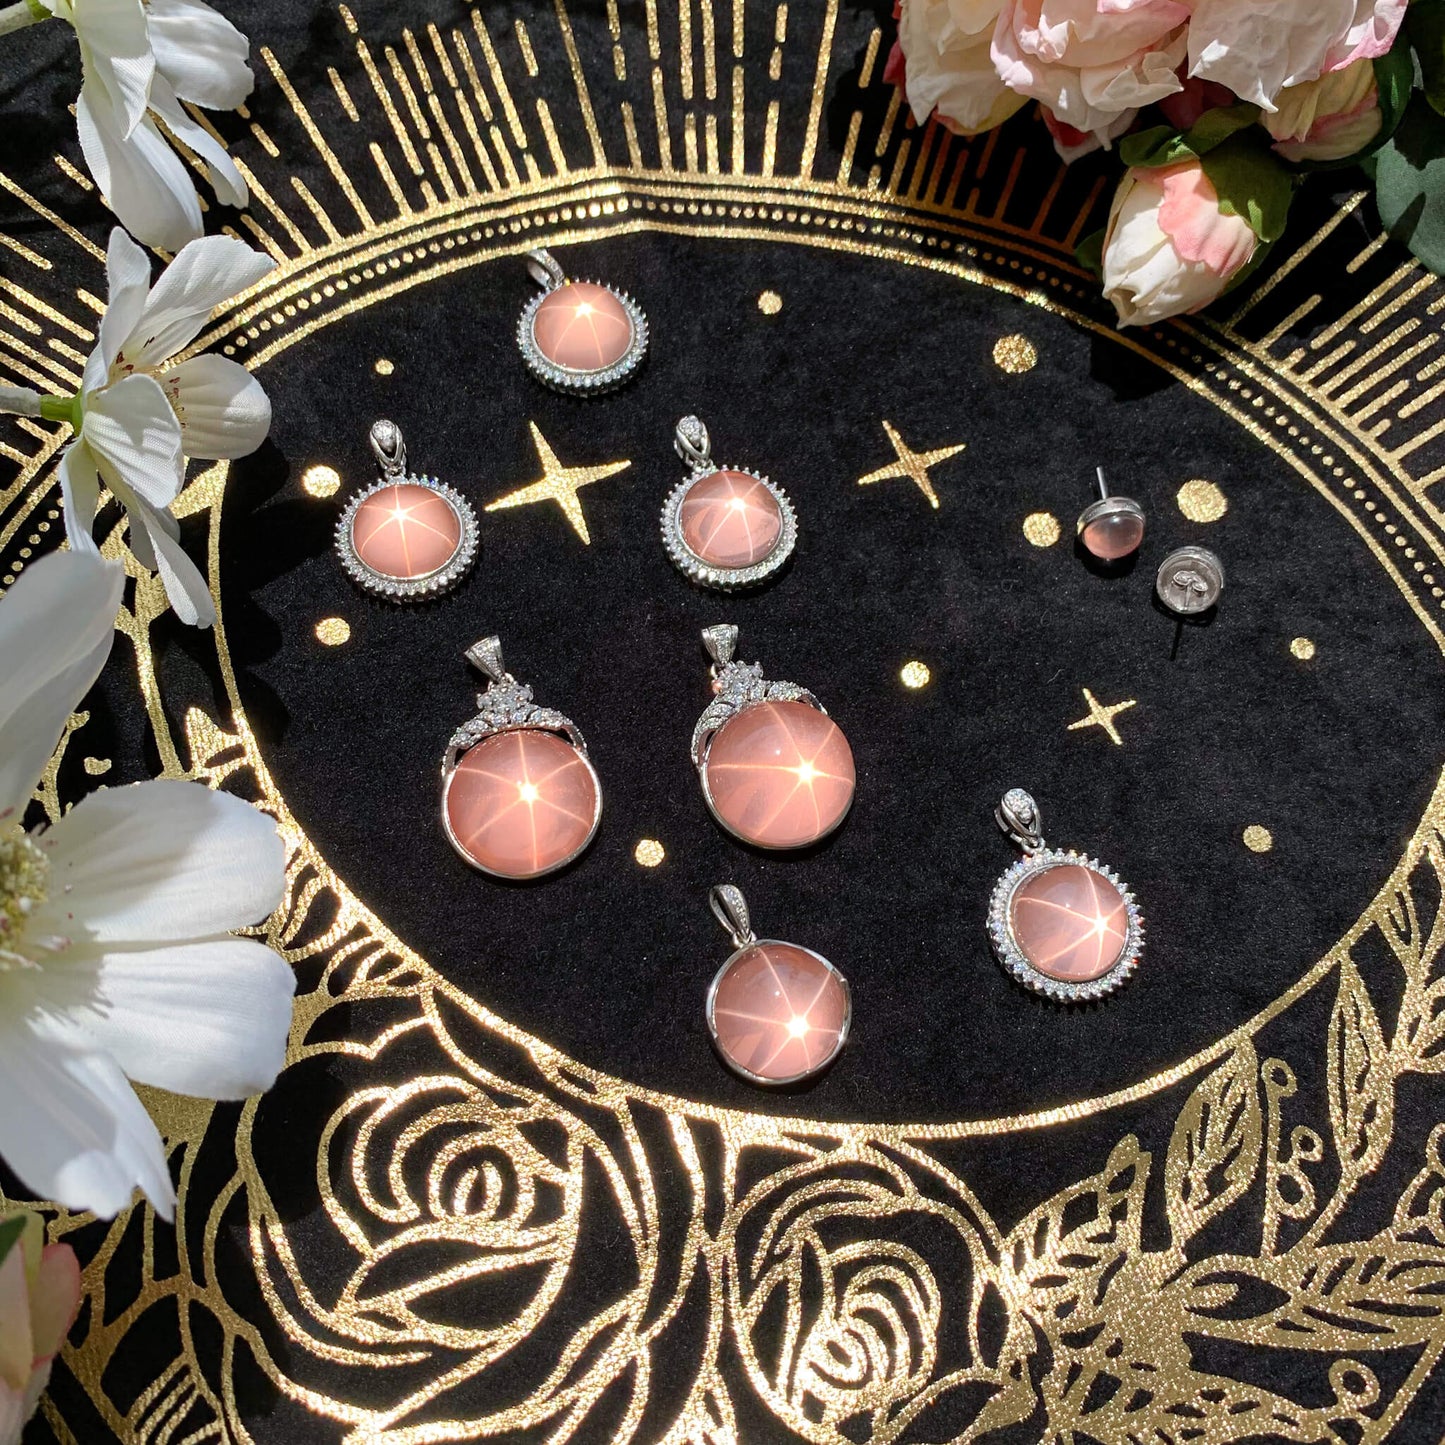 Star Rose Quartz Pendant/High Quality Starlight Rose Quartz Pendant/Starry Rose Quartz Jewelry